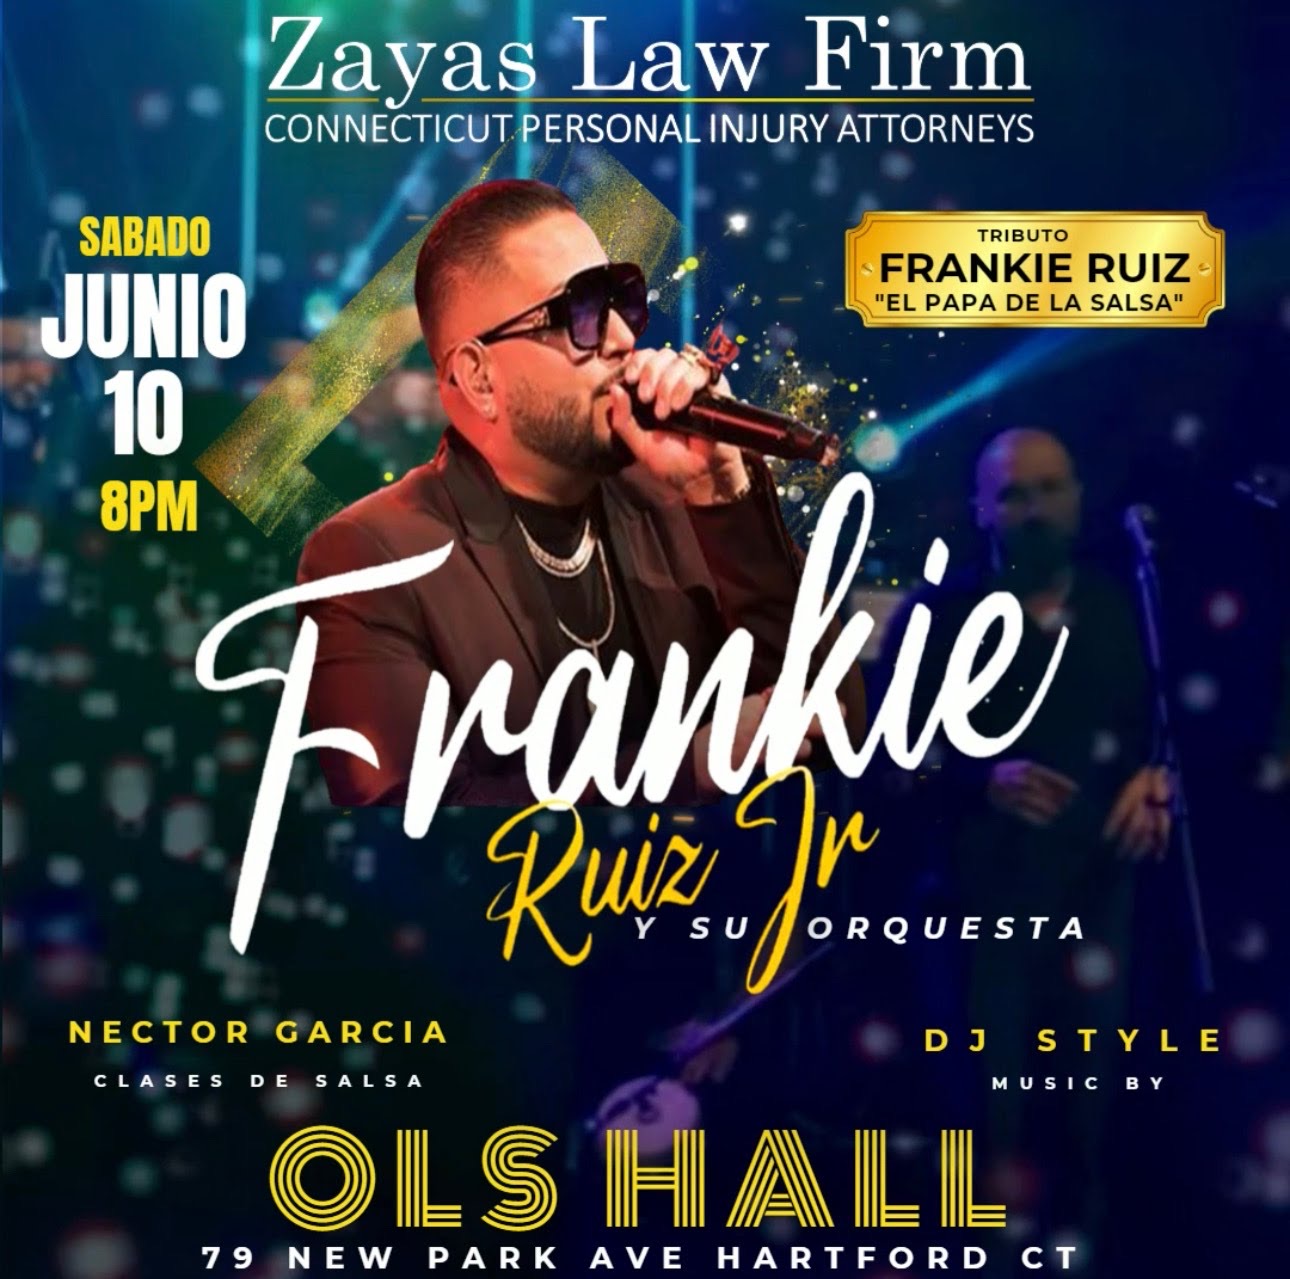 Frankie Ruiz Jr y su Orquesta “El Hijo de la Salsa” cantando los éxitos de su padre, “El Papa de la Salsa” Frankie Ruiz